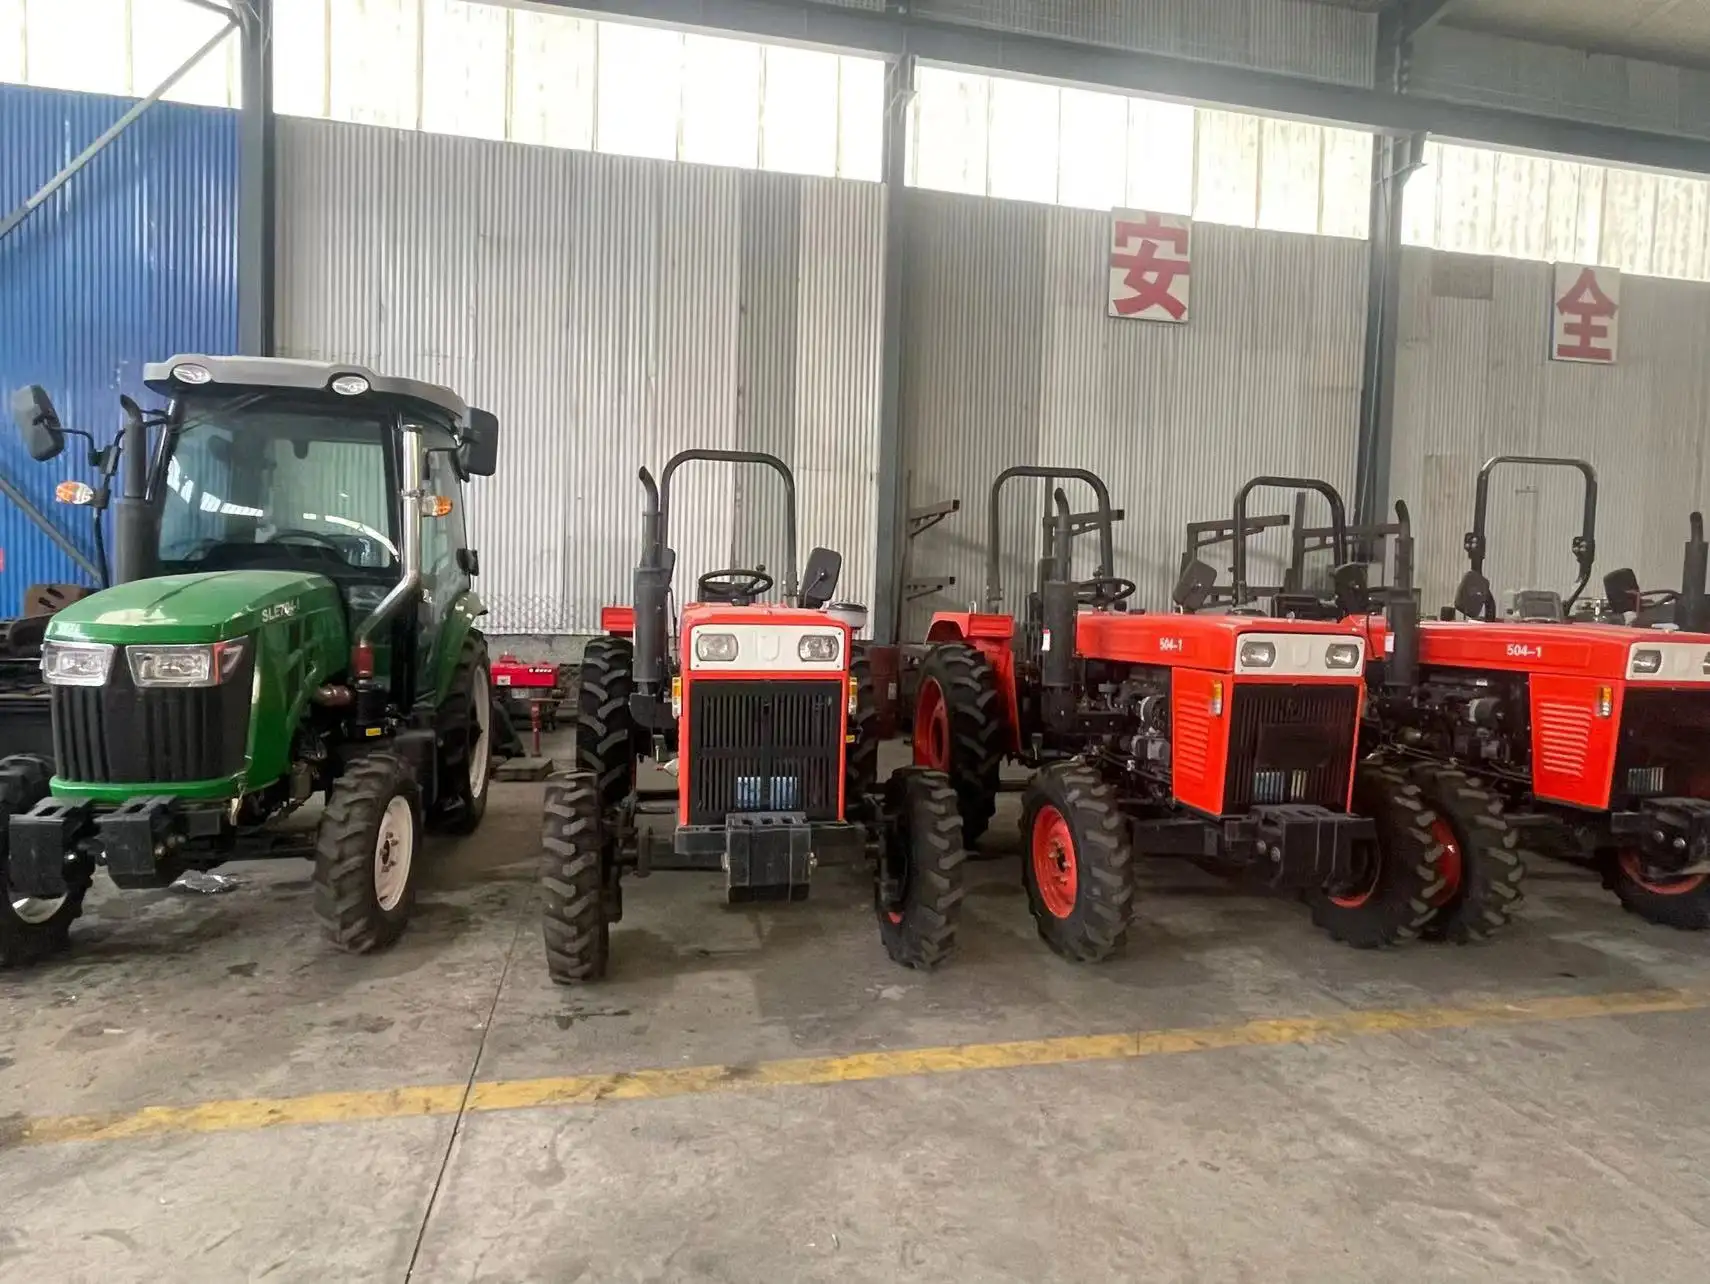 504 604 704 804 904 1004 1204 mesin pertanian traktor pertanian laichou traktor pertanian kecil